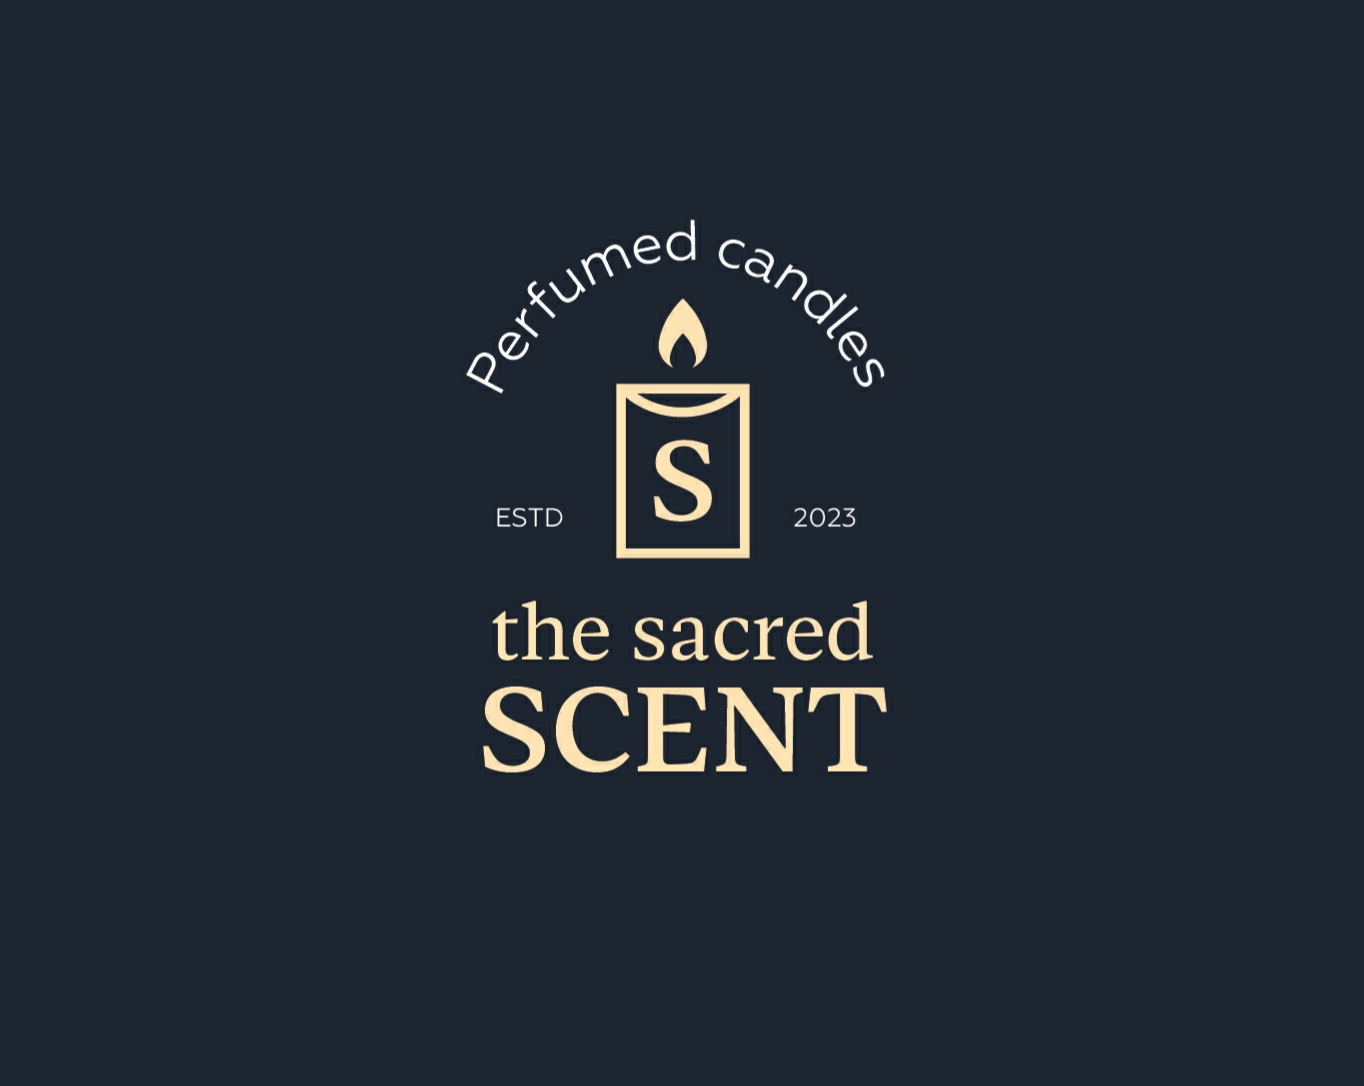 The sacred scent logo design by Abderrahmane on Dribbble